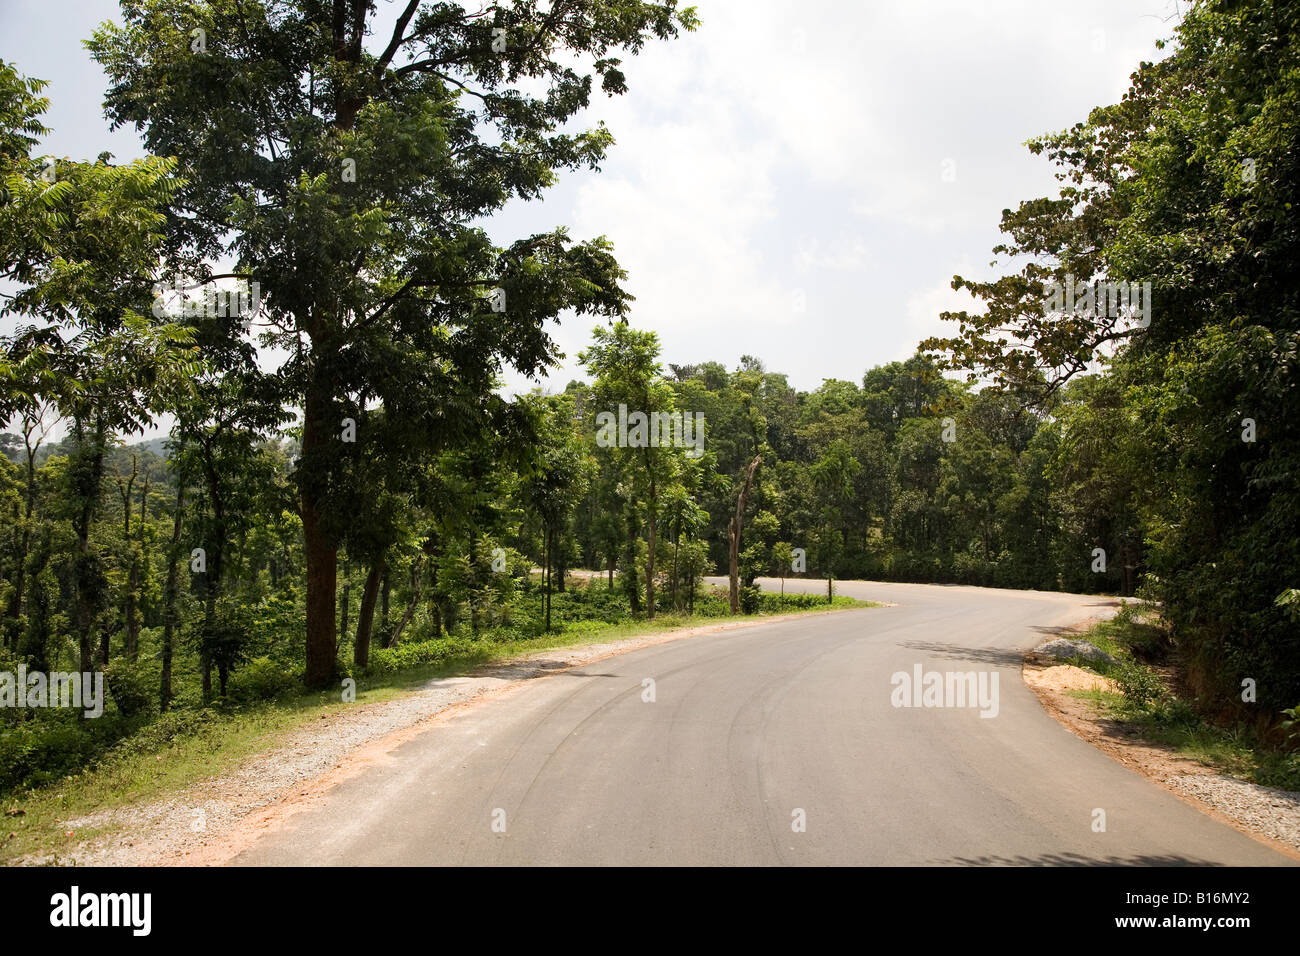 Una delle curve ad S sul Bangalore-Mangalore autostrada nazionale. La forestazione del Western Ghats linee la strada. Foto Stock